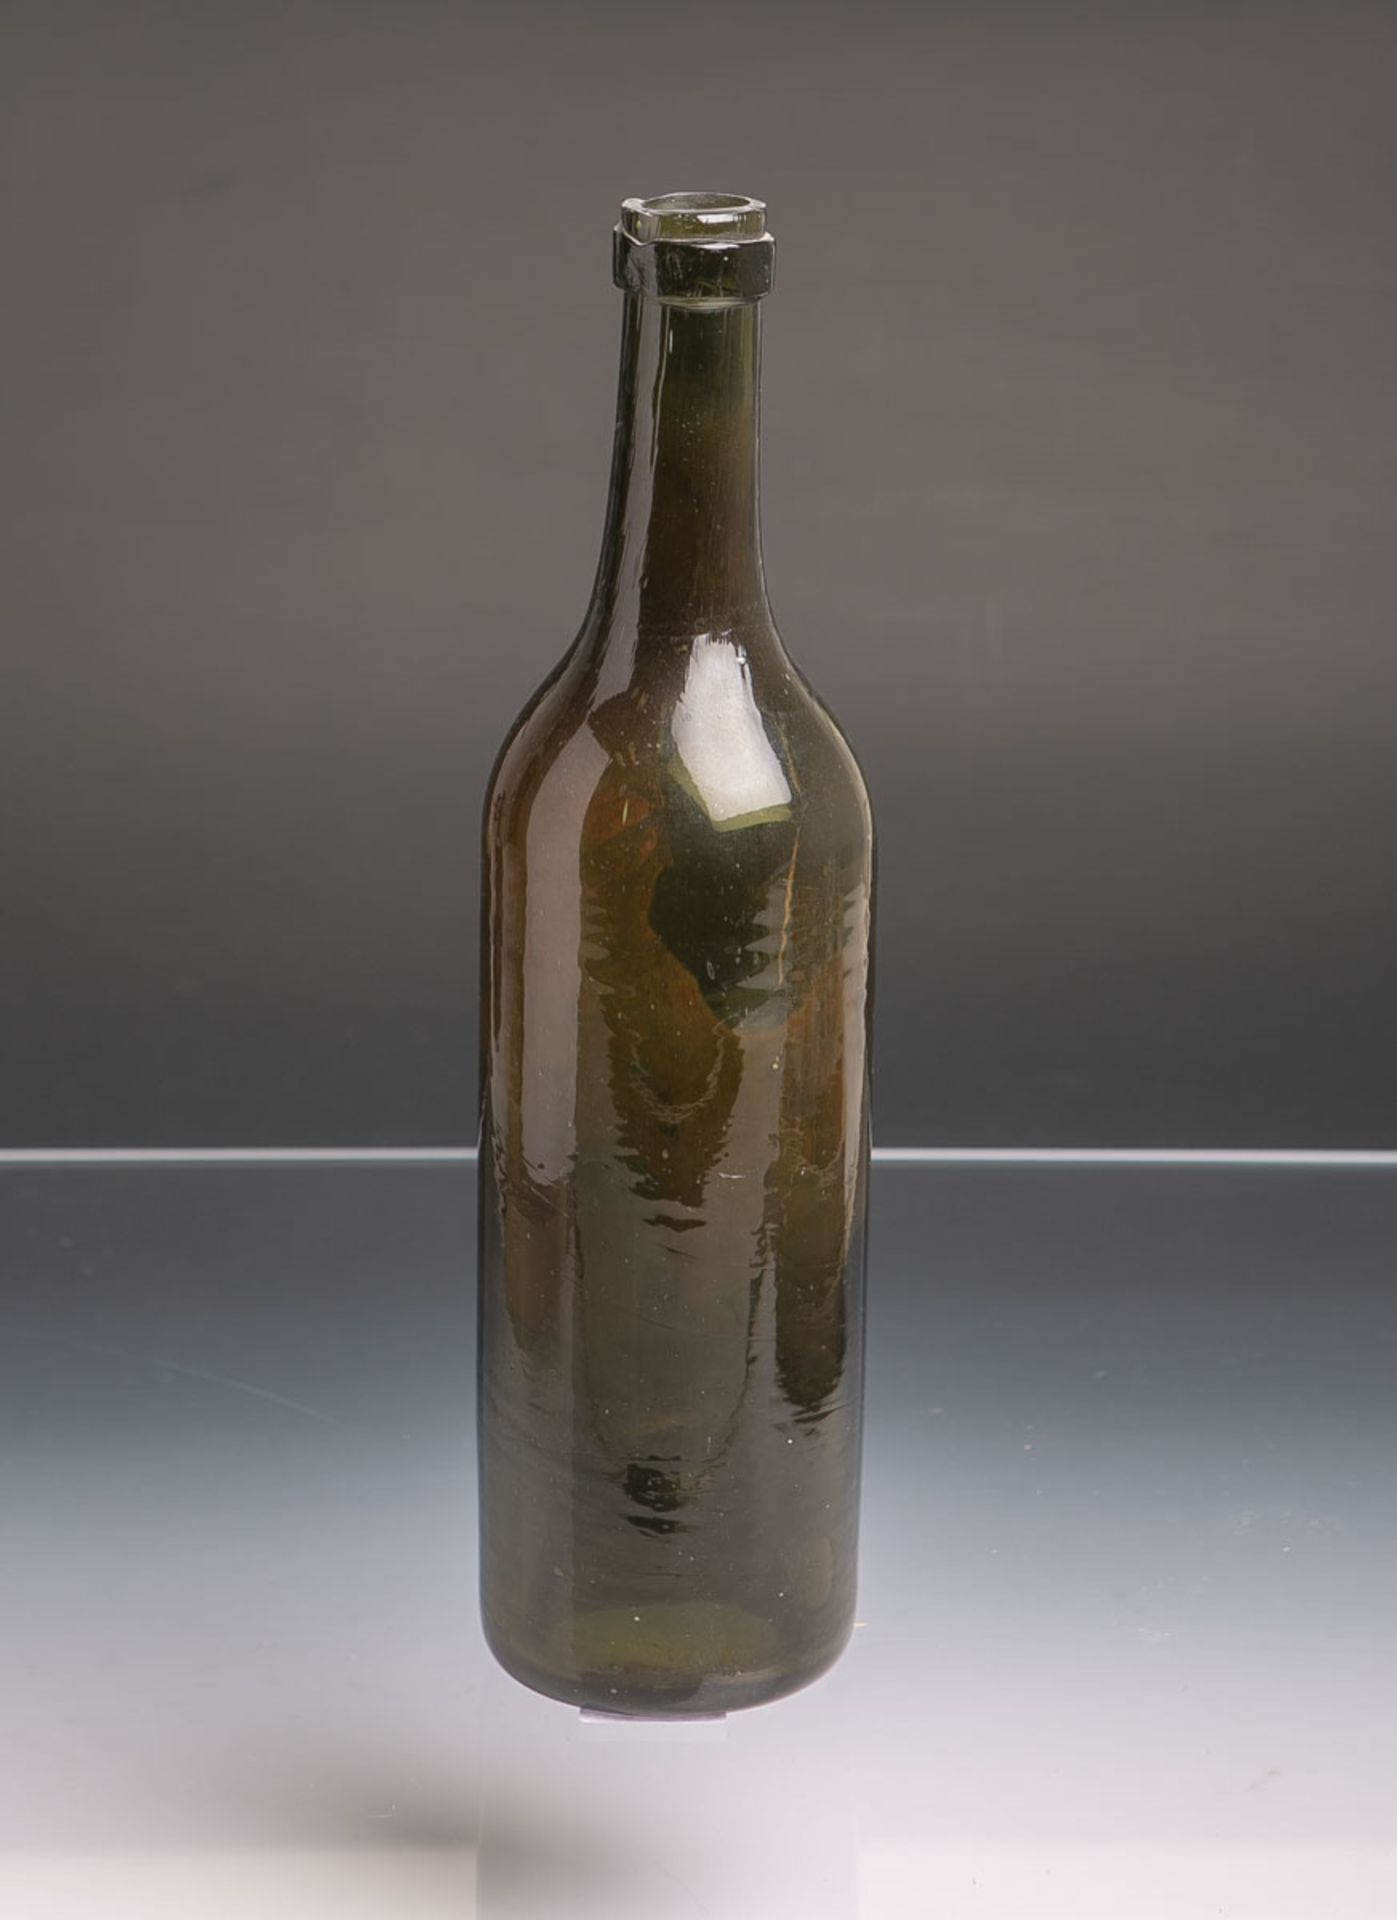 Historische Weinflasche (wohl 18./19. Jh.), olivgrünes Glas mundgeblasen, hochgestochener Boden,